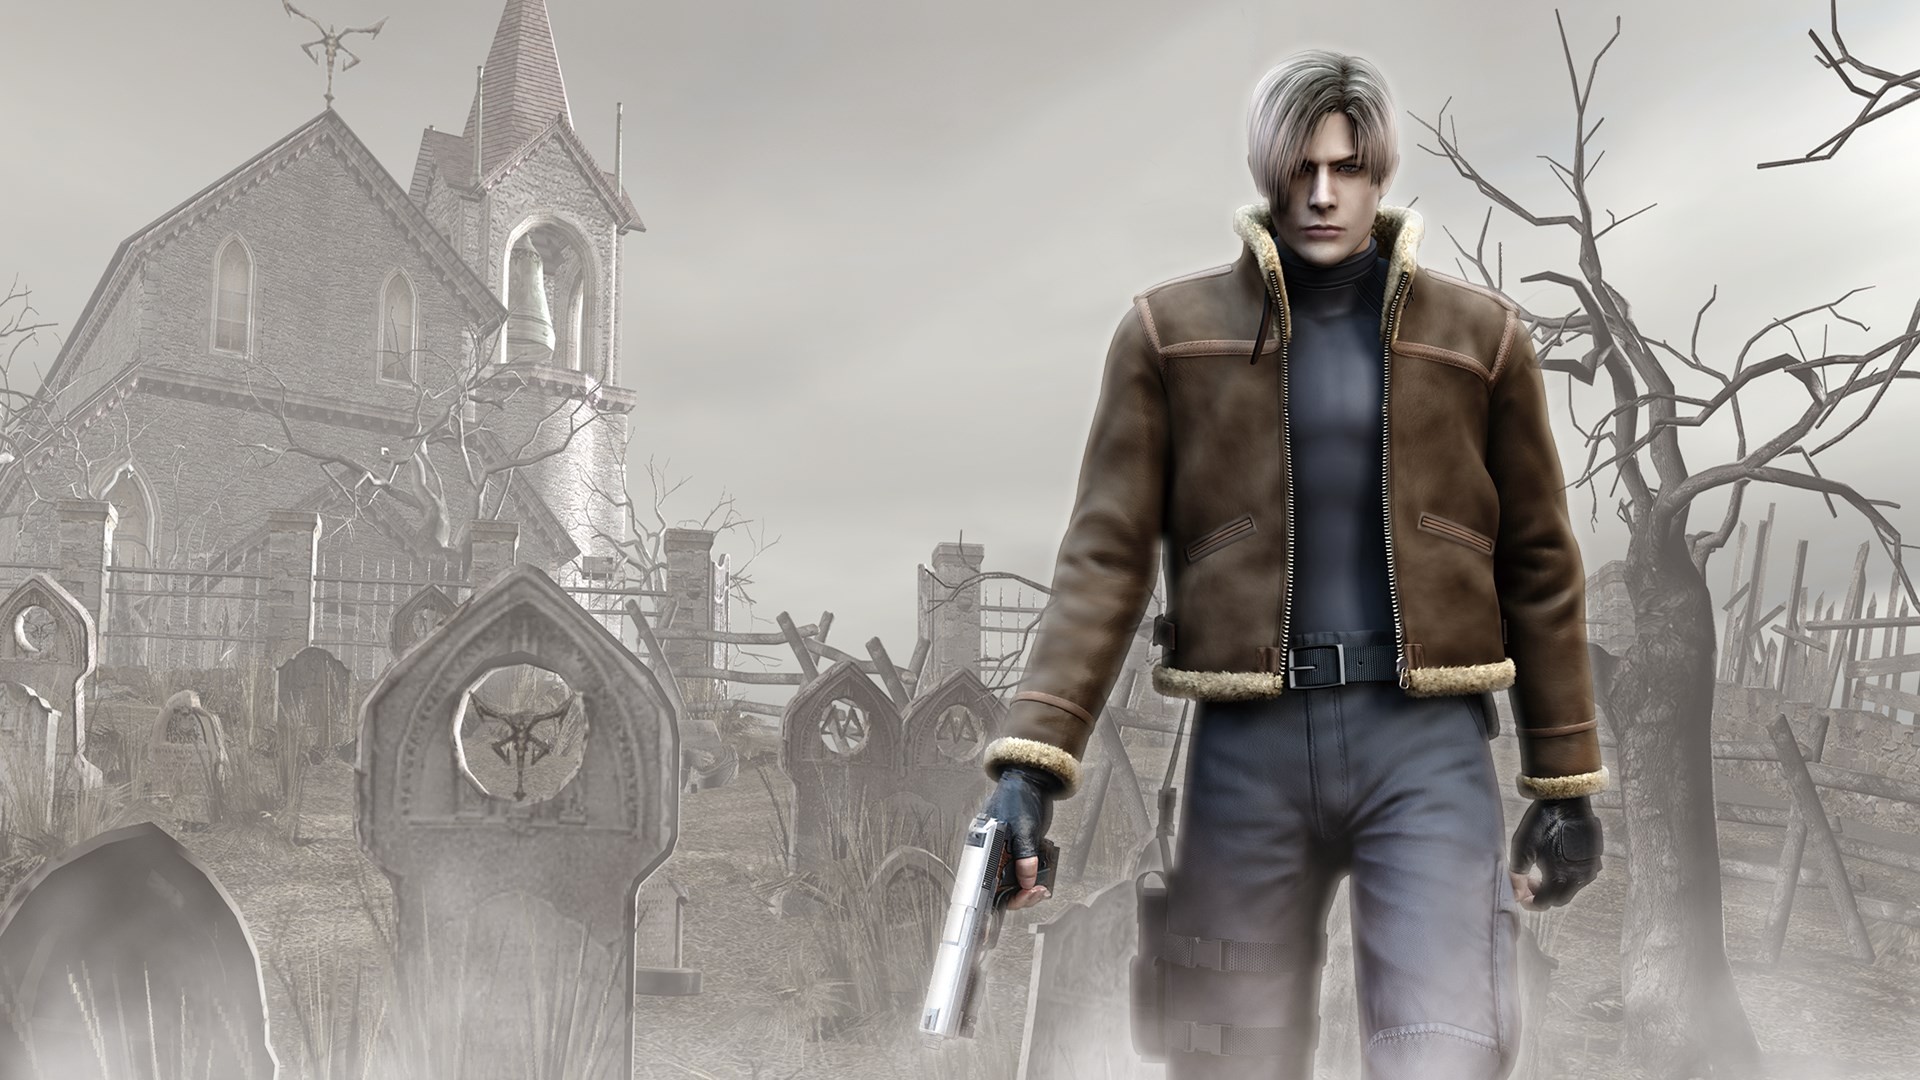 O Resident Evil 4 Remake Chegou! Qual Hardware roda ele